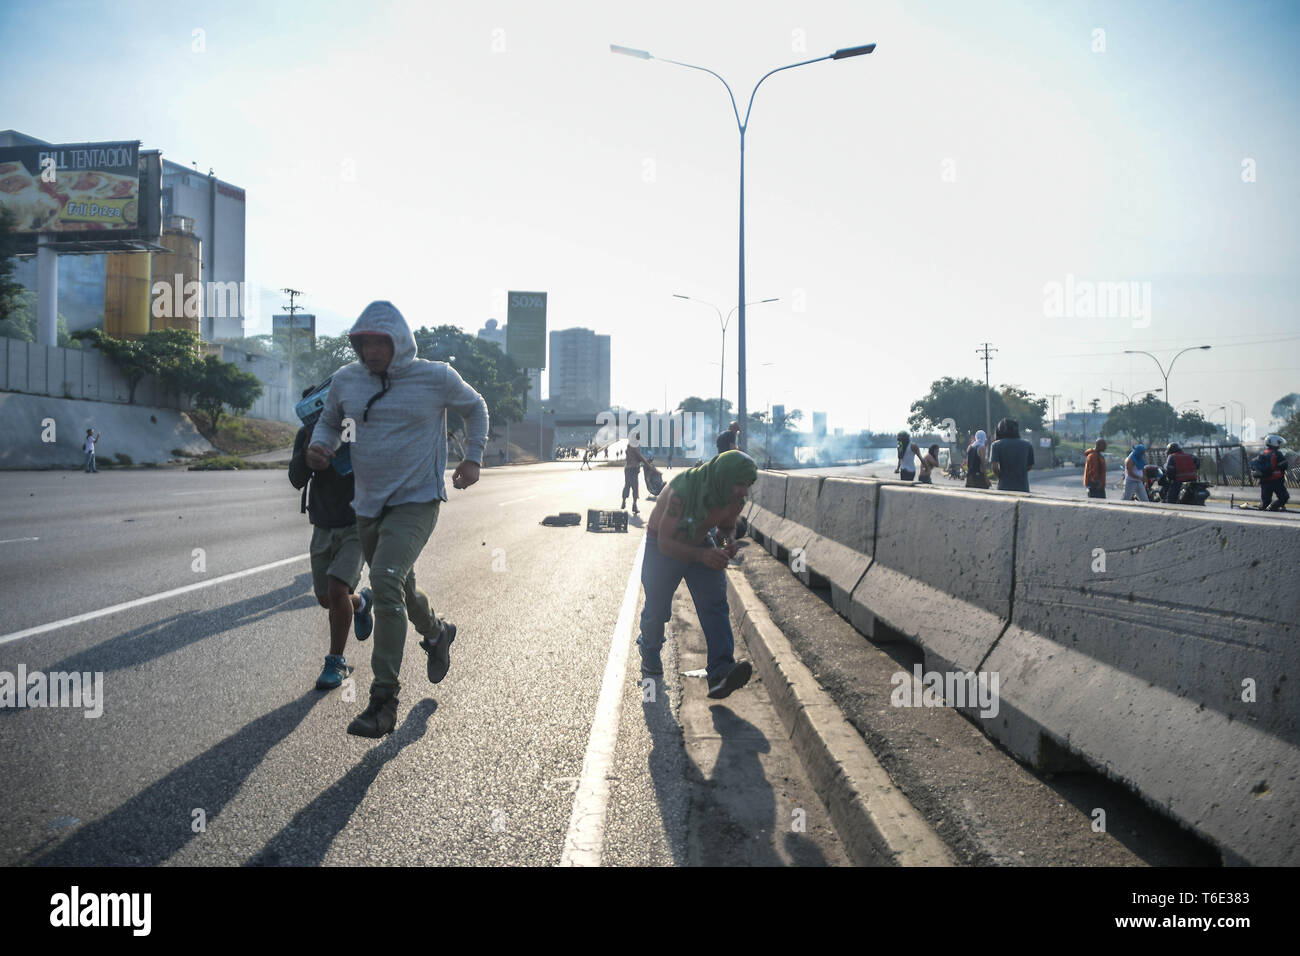 Die Regierung die Demonstranten auf der Straße während der militärputsch gesehen. Venezolanischen Militärs, die Unterstützung der venezolanischen Opposition leader Juan Guaido sind auf die Strasse mit ihren Waffen zusammen mit der Regierung die Demonstranten in einem Militärputsch gegen die sozialistische Regierung unter der Führung von Präsident Nicolas Maduro. Stockfoto